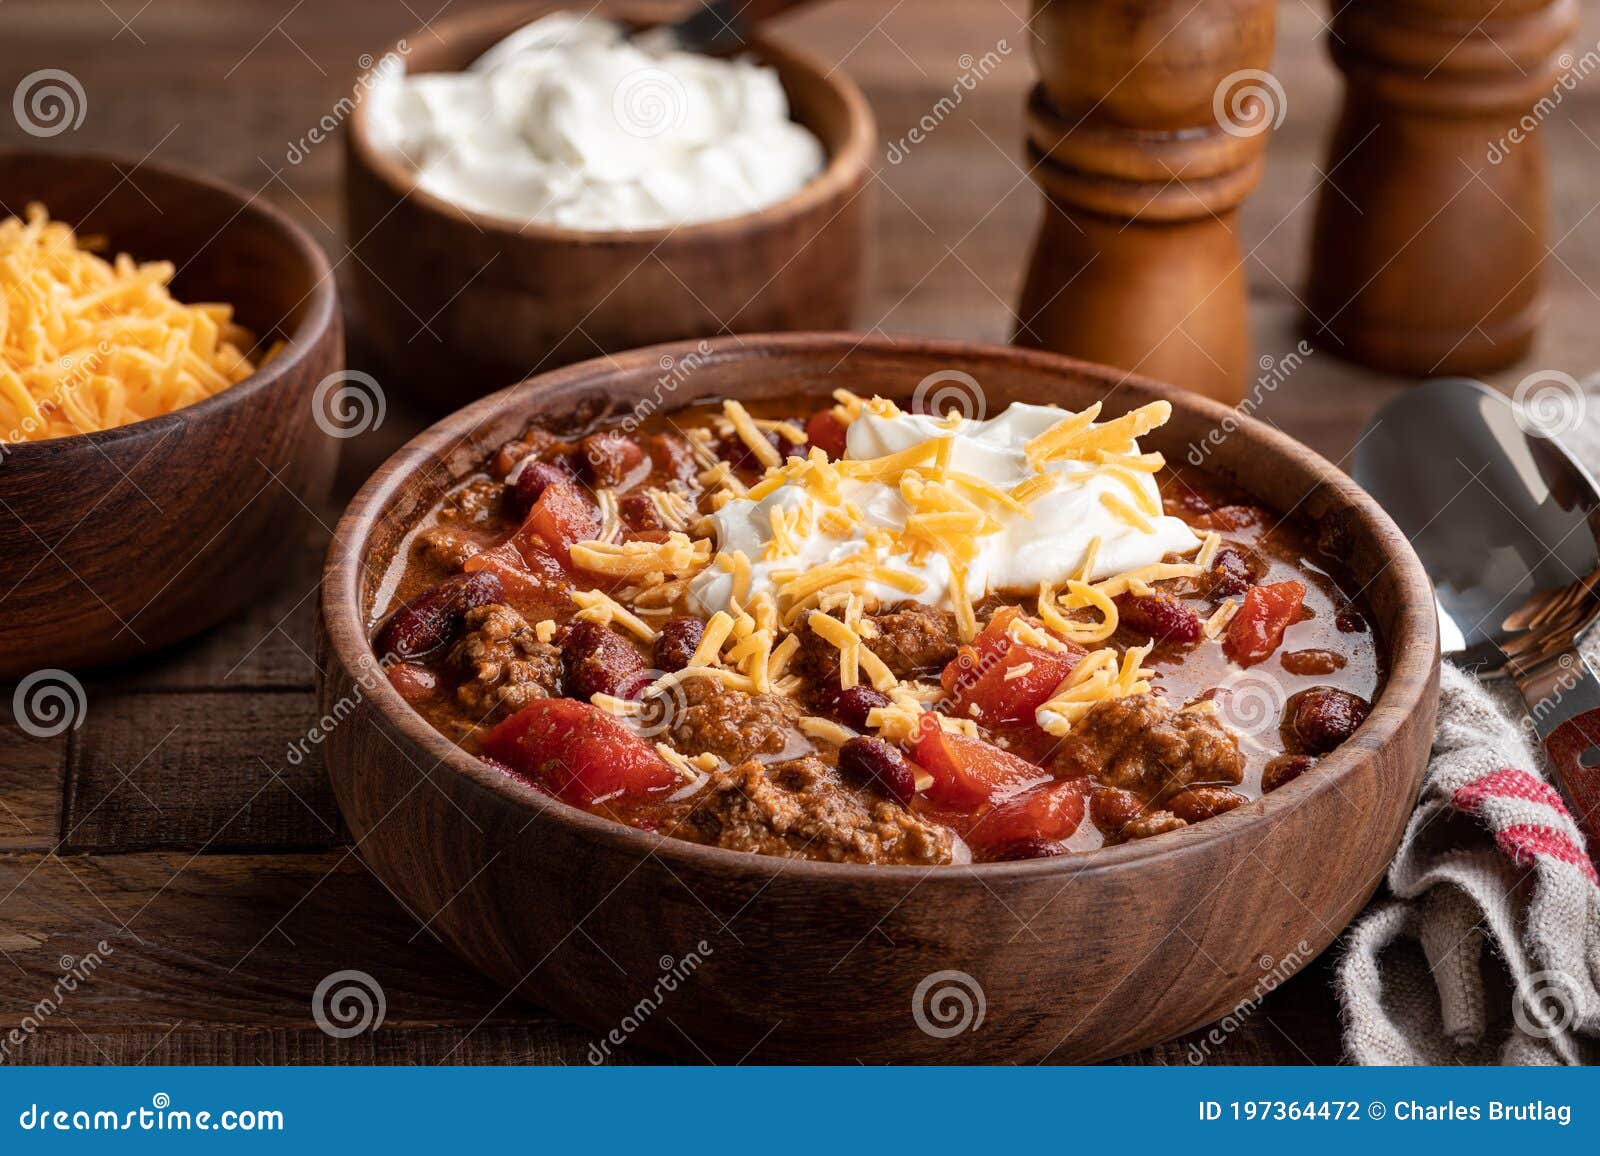 bowl of chili con carne